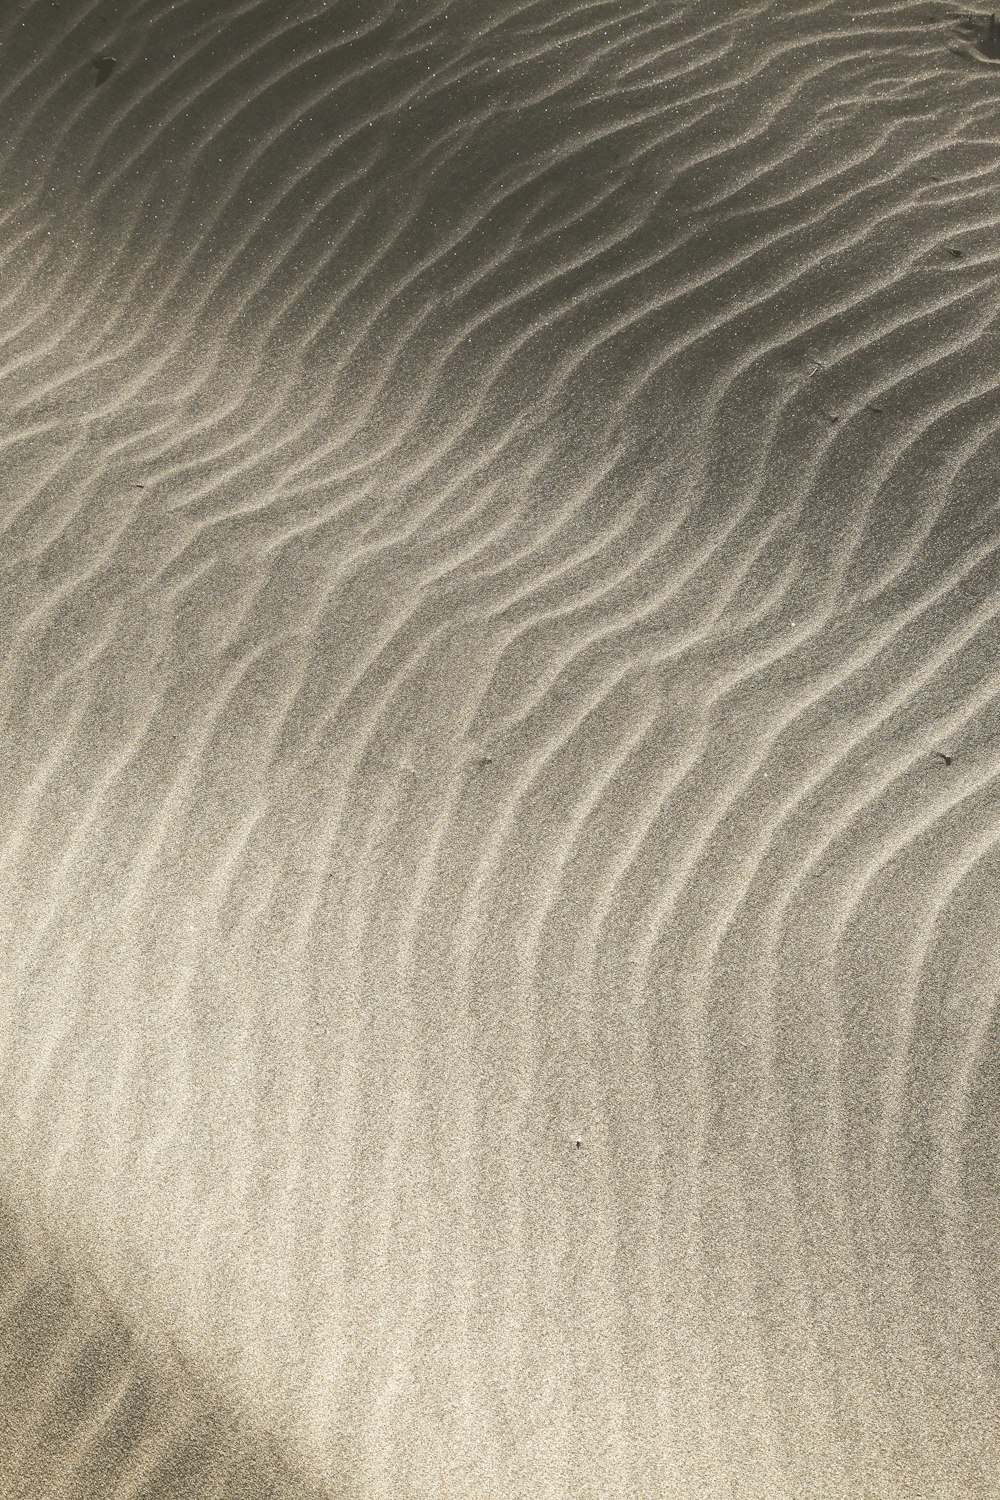 una duna di sabbia con un piccolo uccello in piedi sopra di essa